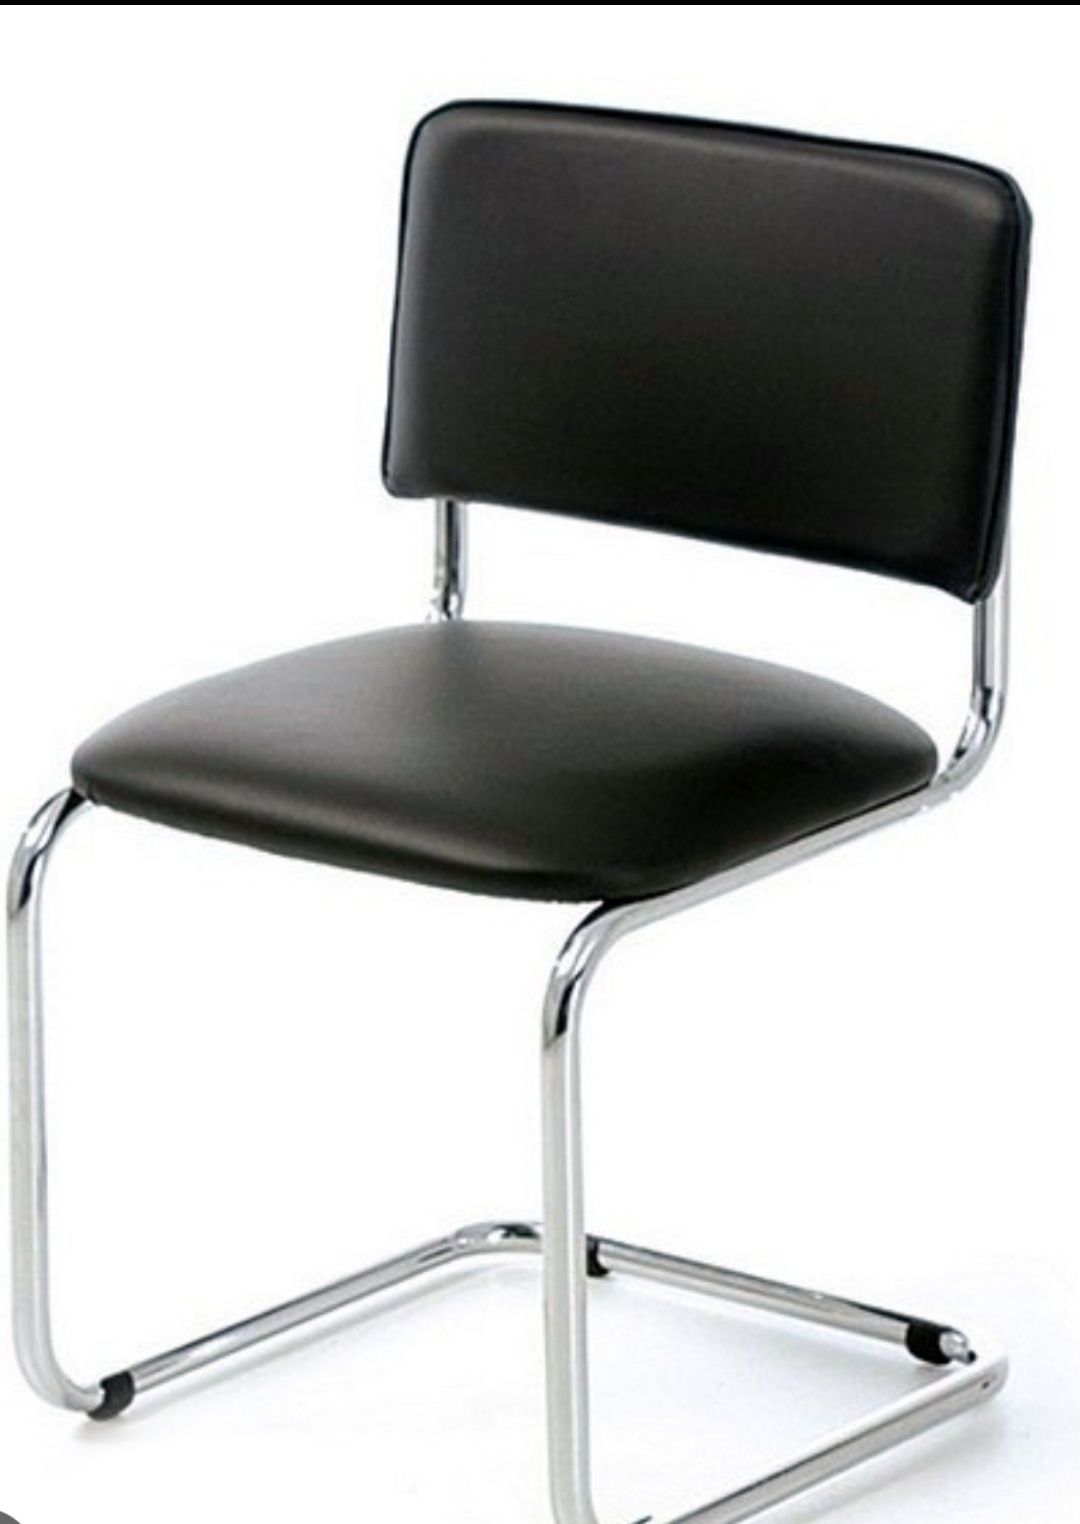 Офисный стул Сильвия никель оптовая цена